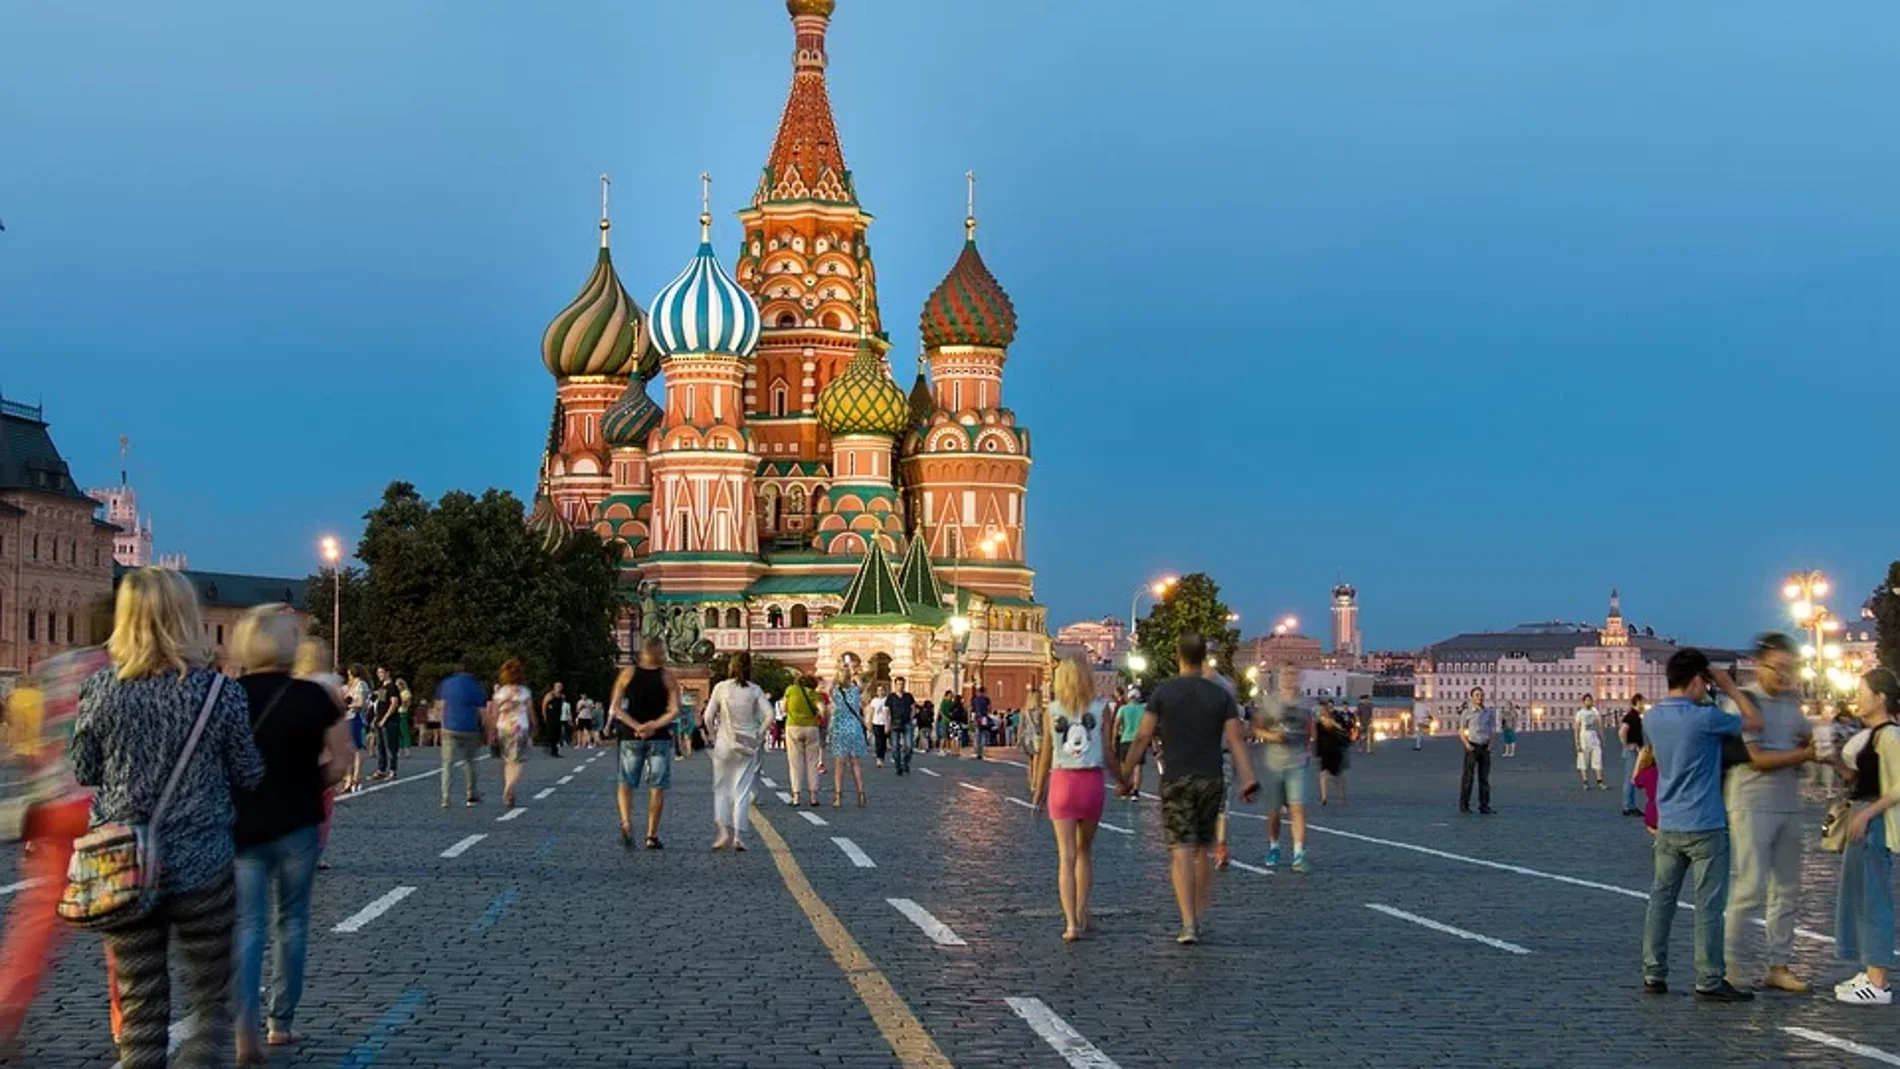 el número de turistas españoles aumenta año tras año, según afirma en FITUR el Comité de Turismo de la Ciudad de Moscú.